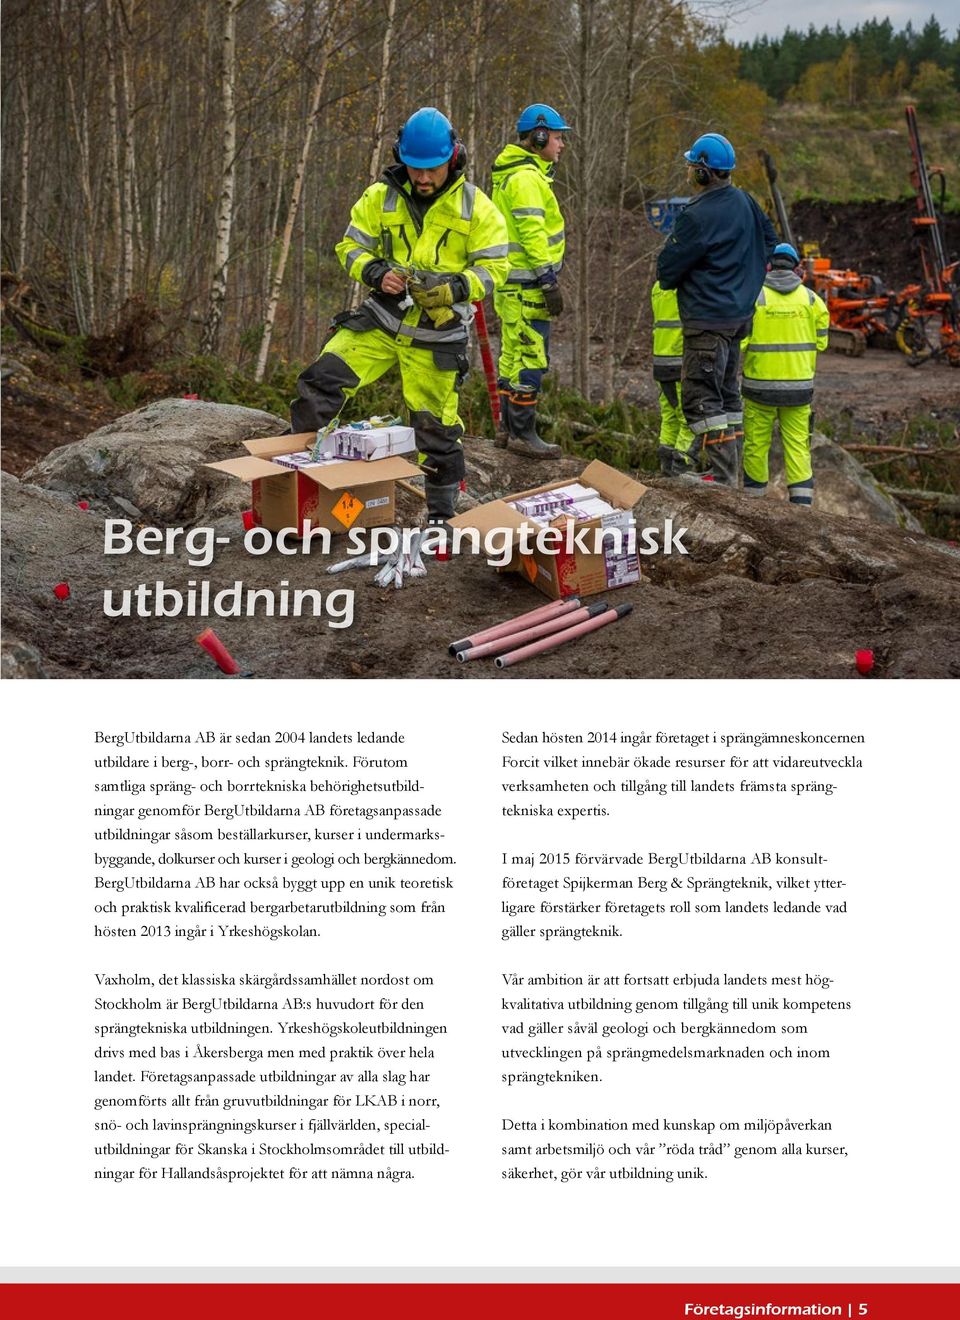 geologi och bergkännedom. BergUtbildarna AB har också byggt upp en unik teoretisk och praktisk kvalificerad bergarbetarutbildning som från hösten 2013 ingår i Yrkeshögskolan.